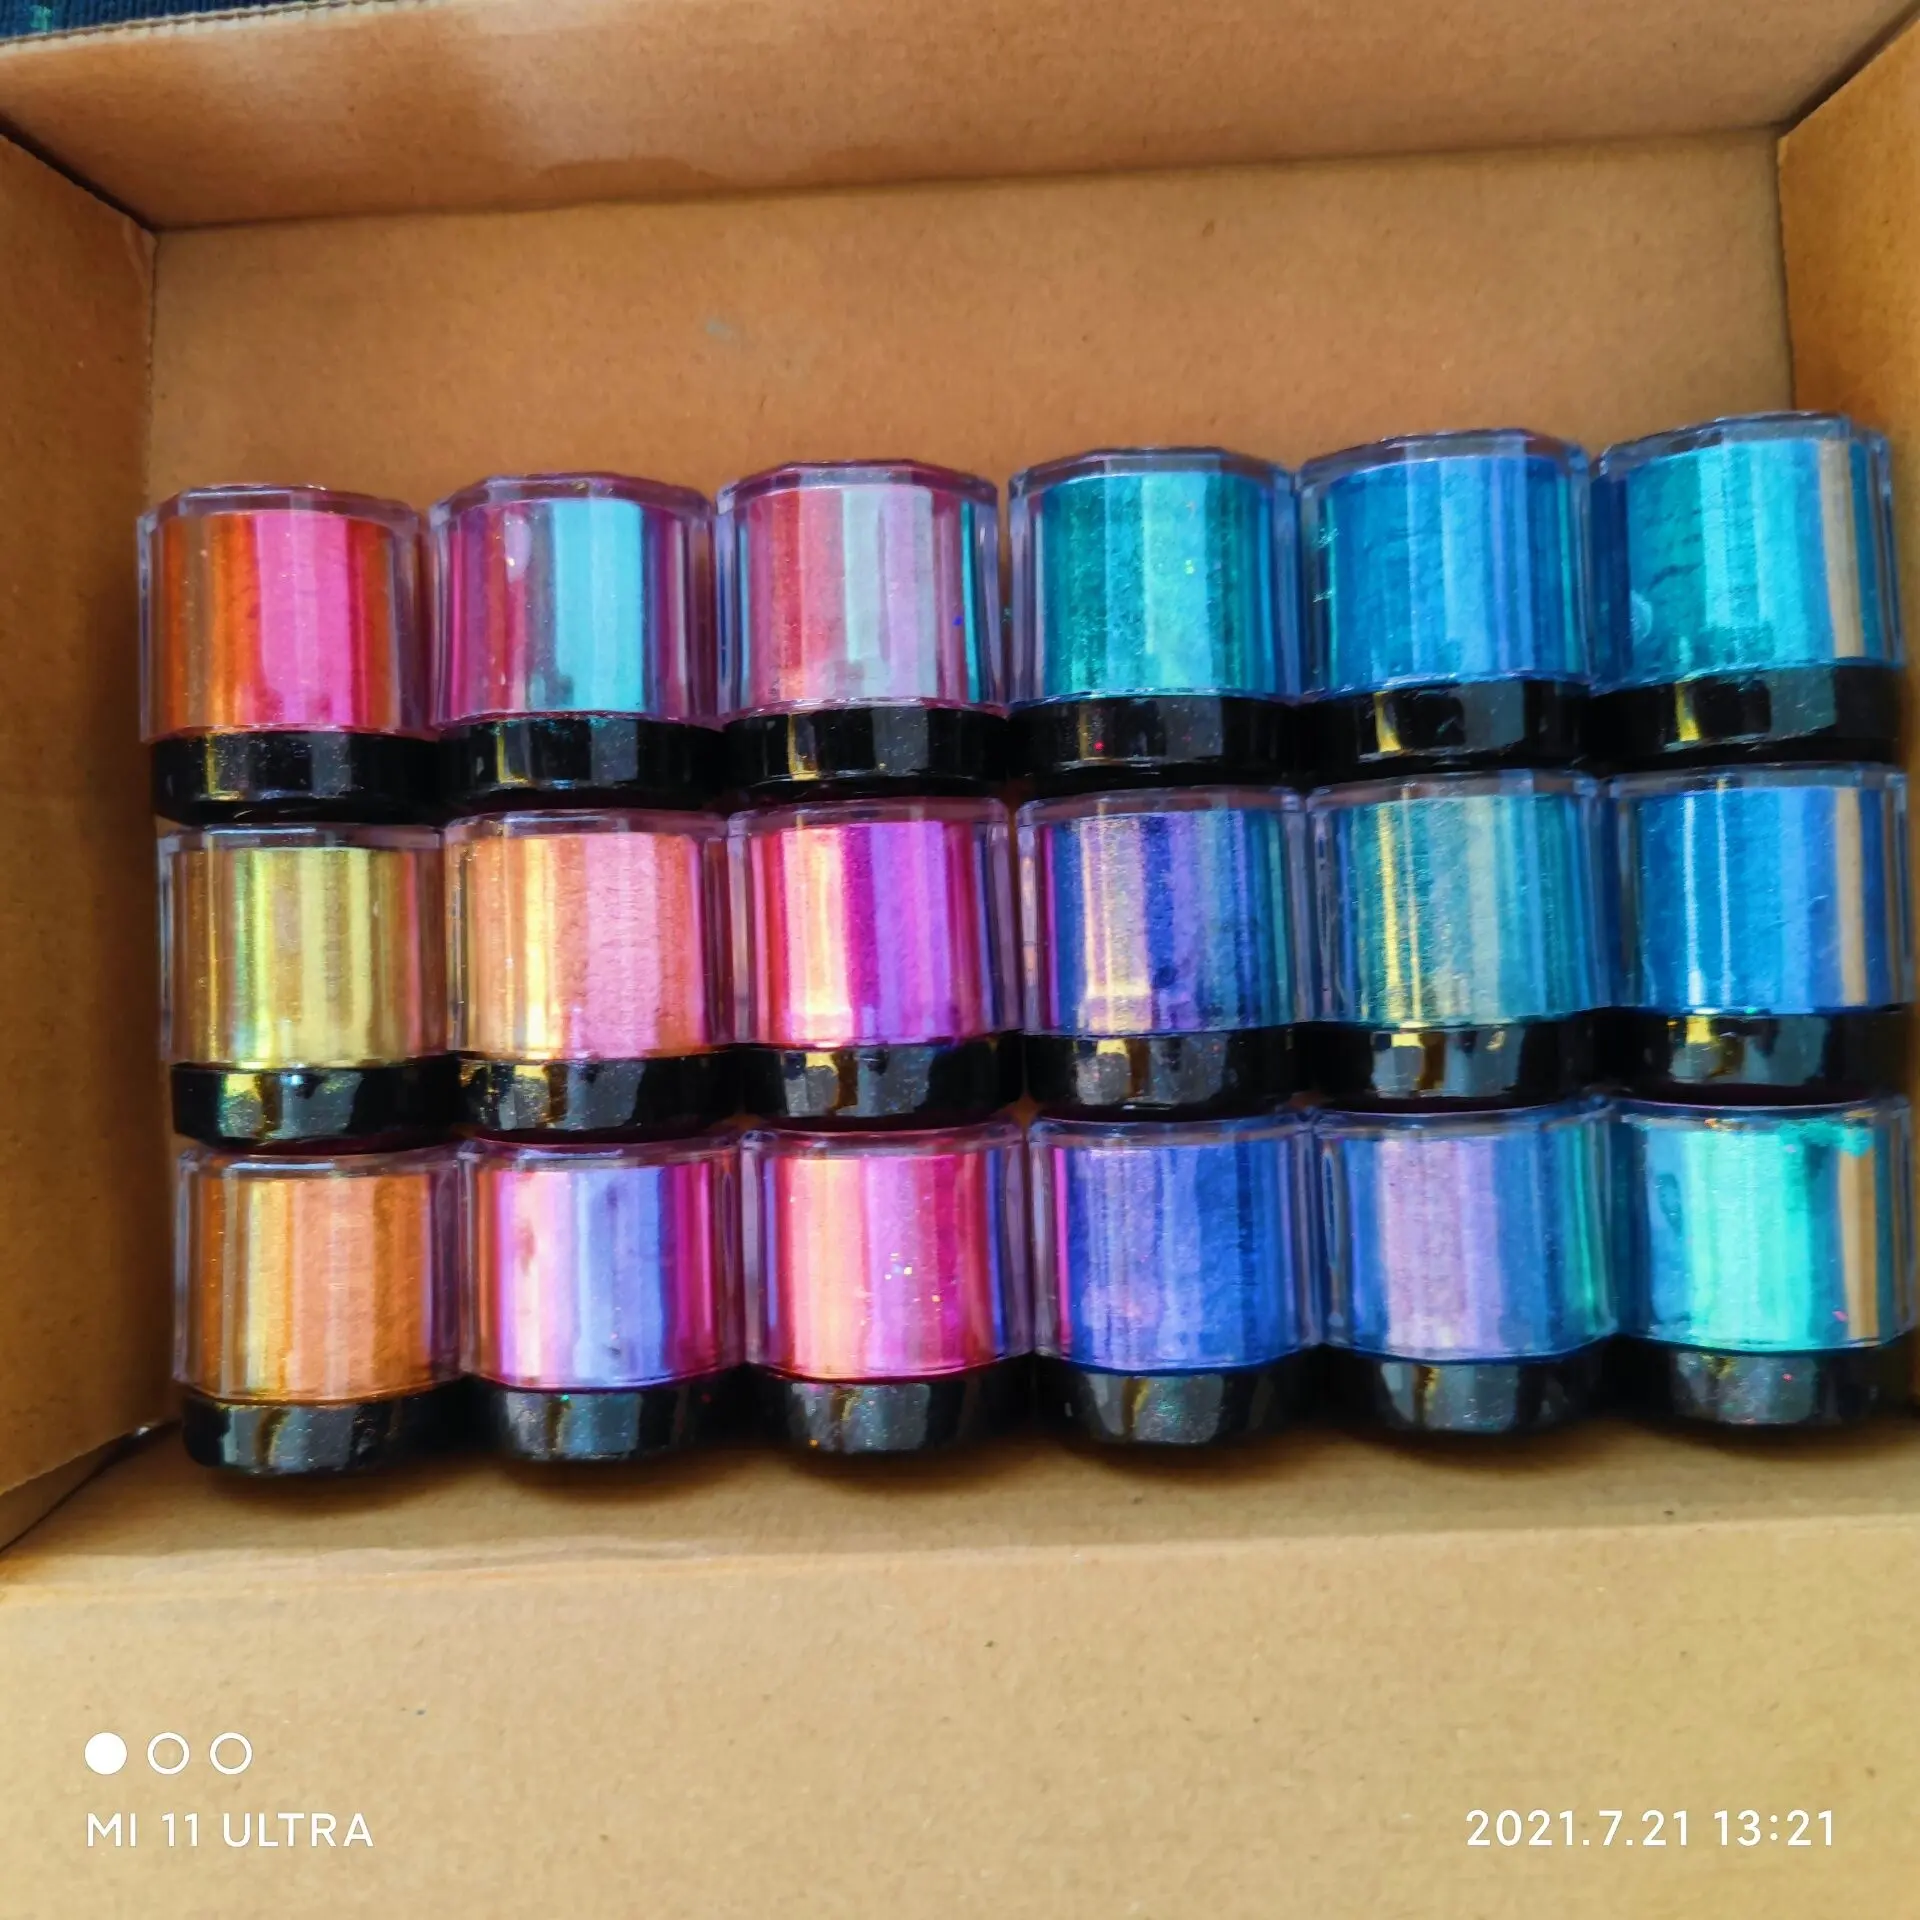 Оптовая продажа 18 видов цветов оптом amazon по индивидуальному заказу Хамелеон меняющая цвет порошок слюды/флуоресцентные пигменты смены цвета Перламутровые Пигменты